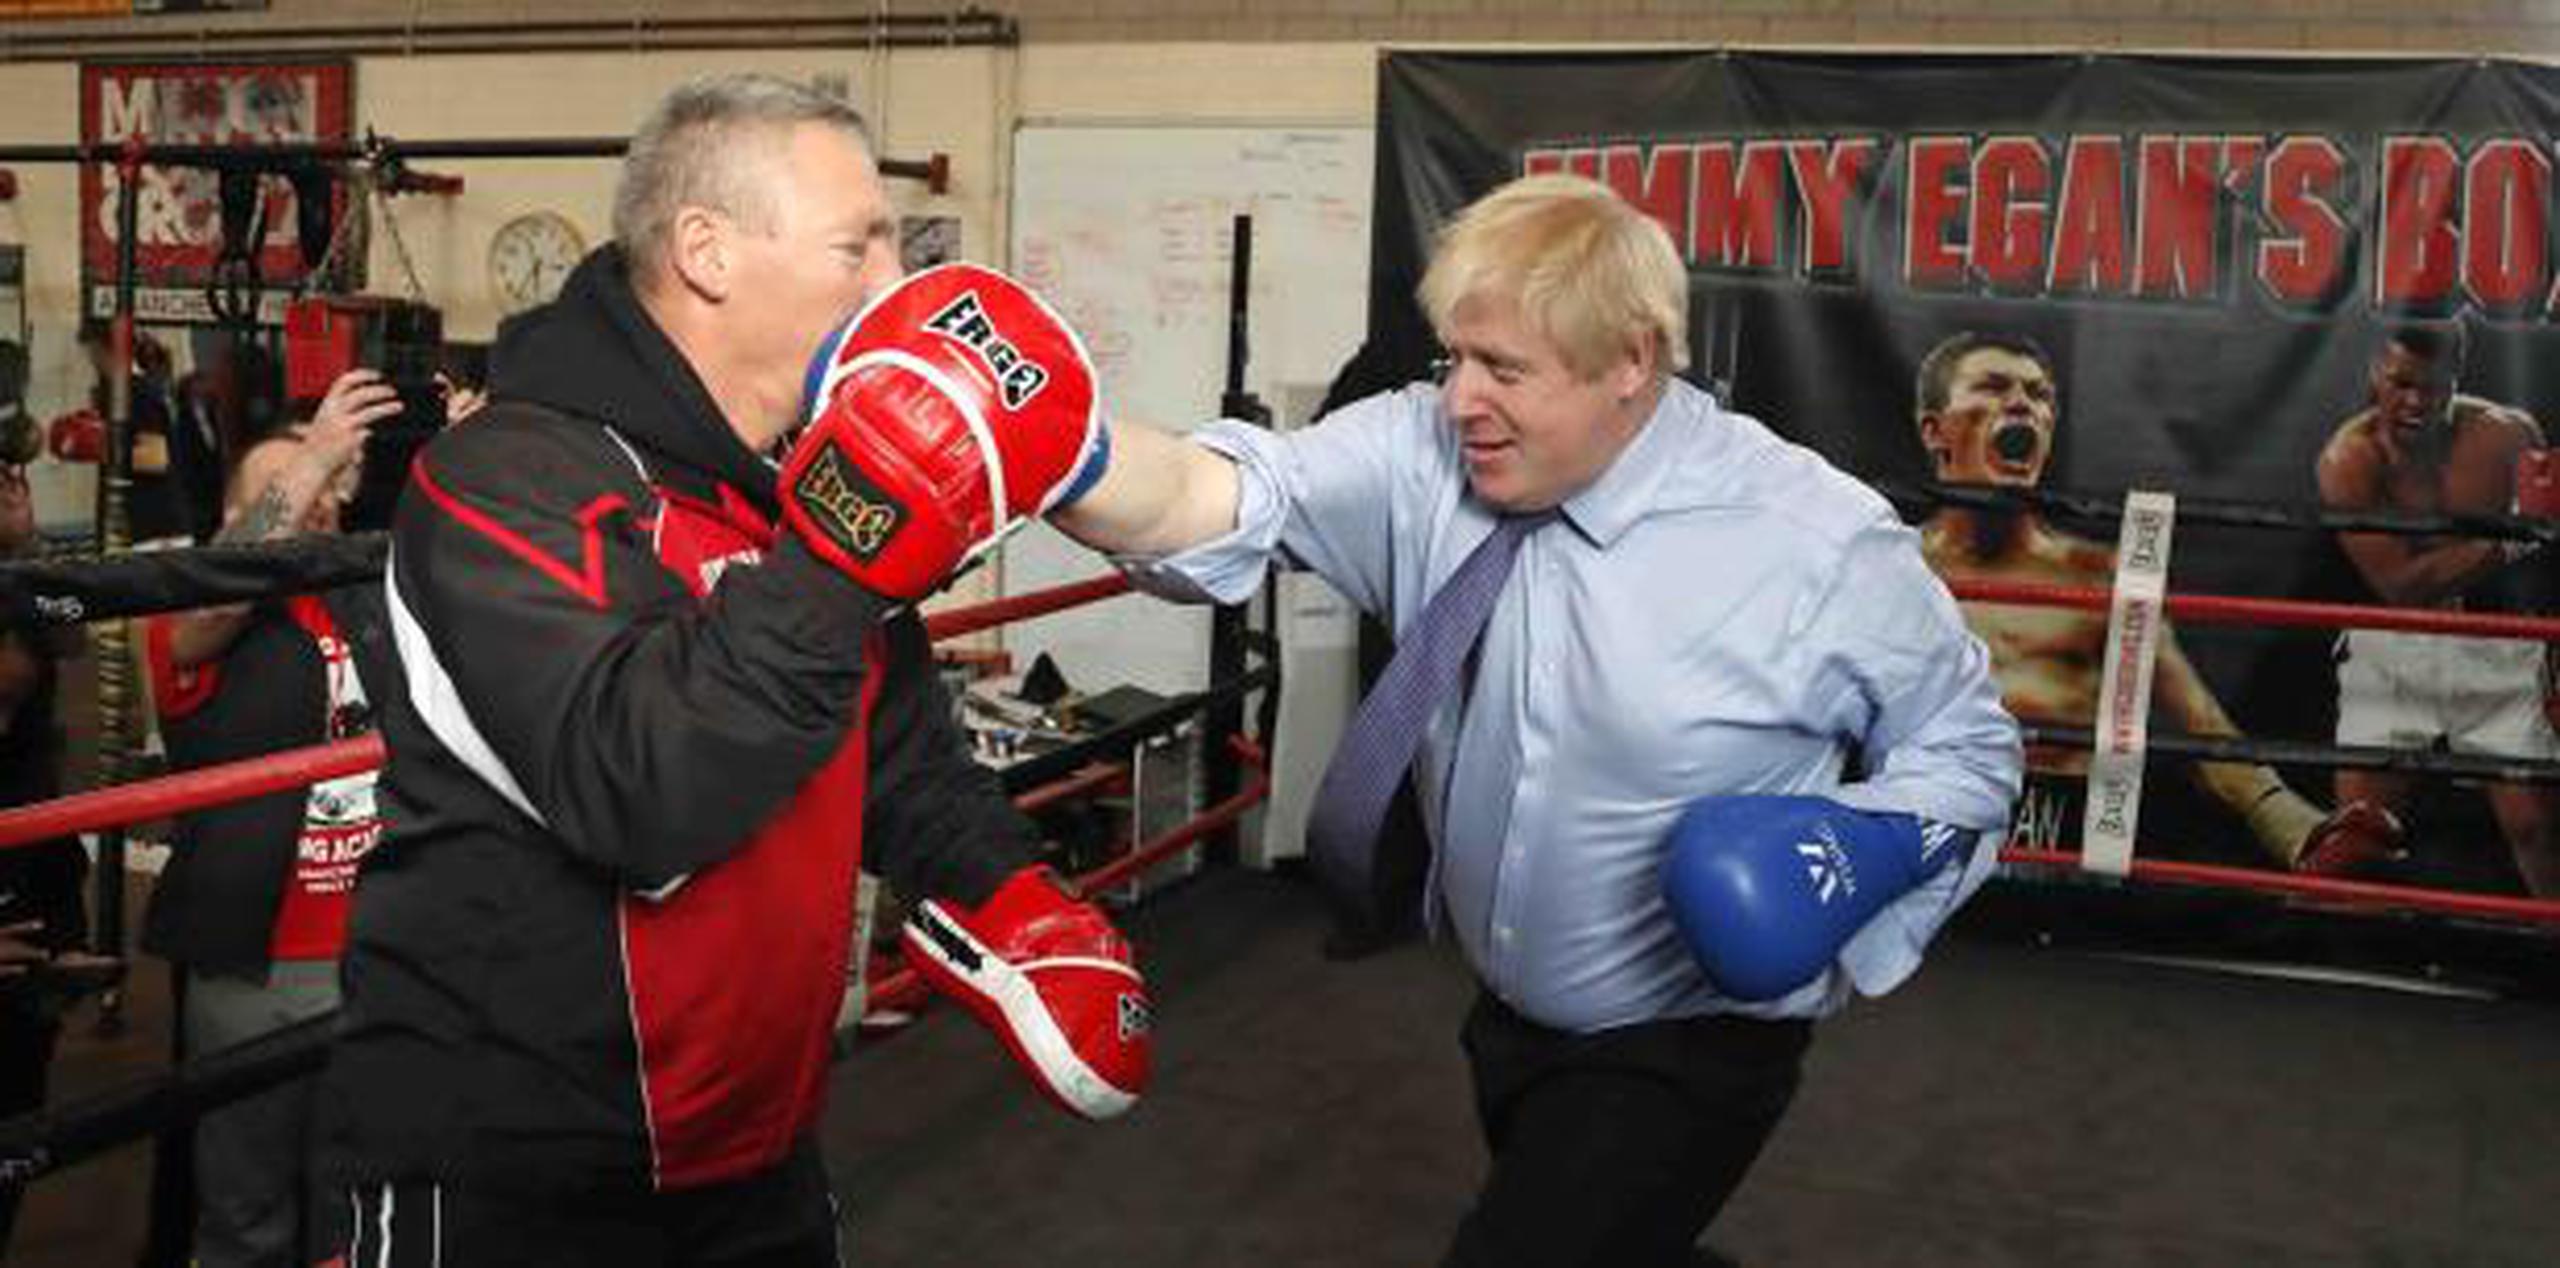 La elección enfrenta a los conservadores de Johnson, aquí en una sesión de boxeo, con su promesa de “completar el Brexit”, con el Partido Laborista, que dijo que celebrará un nuevo referéndum sobre la permanencia en la UE.  (AP)